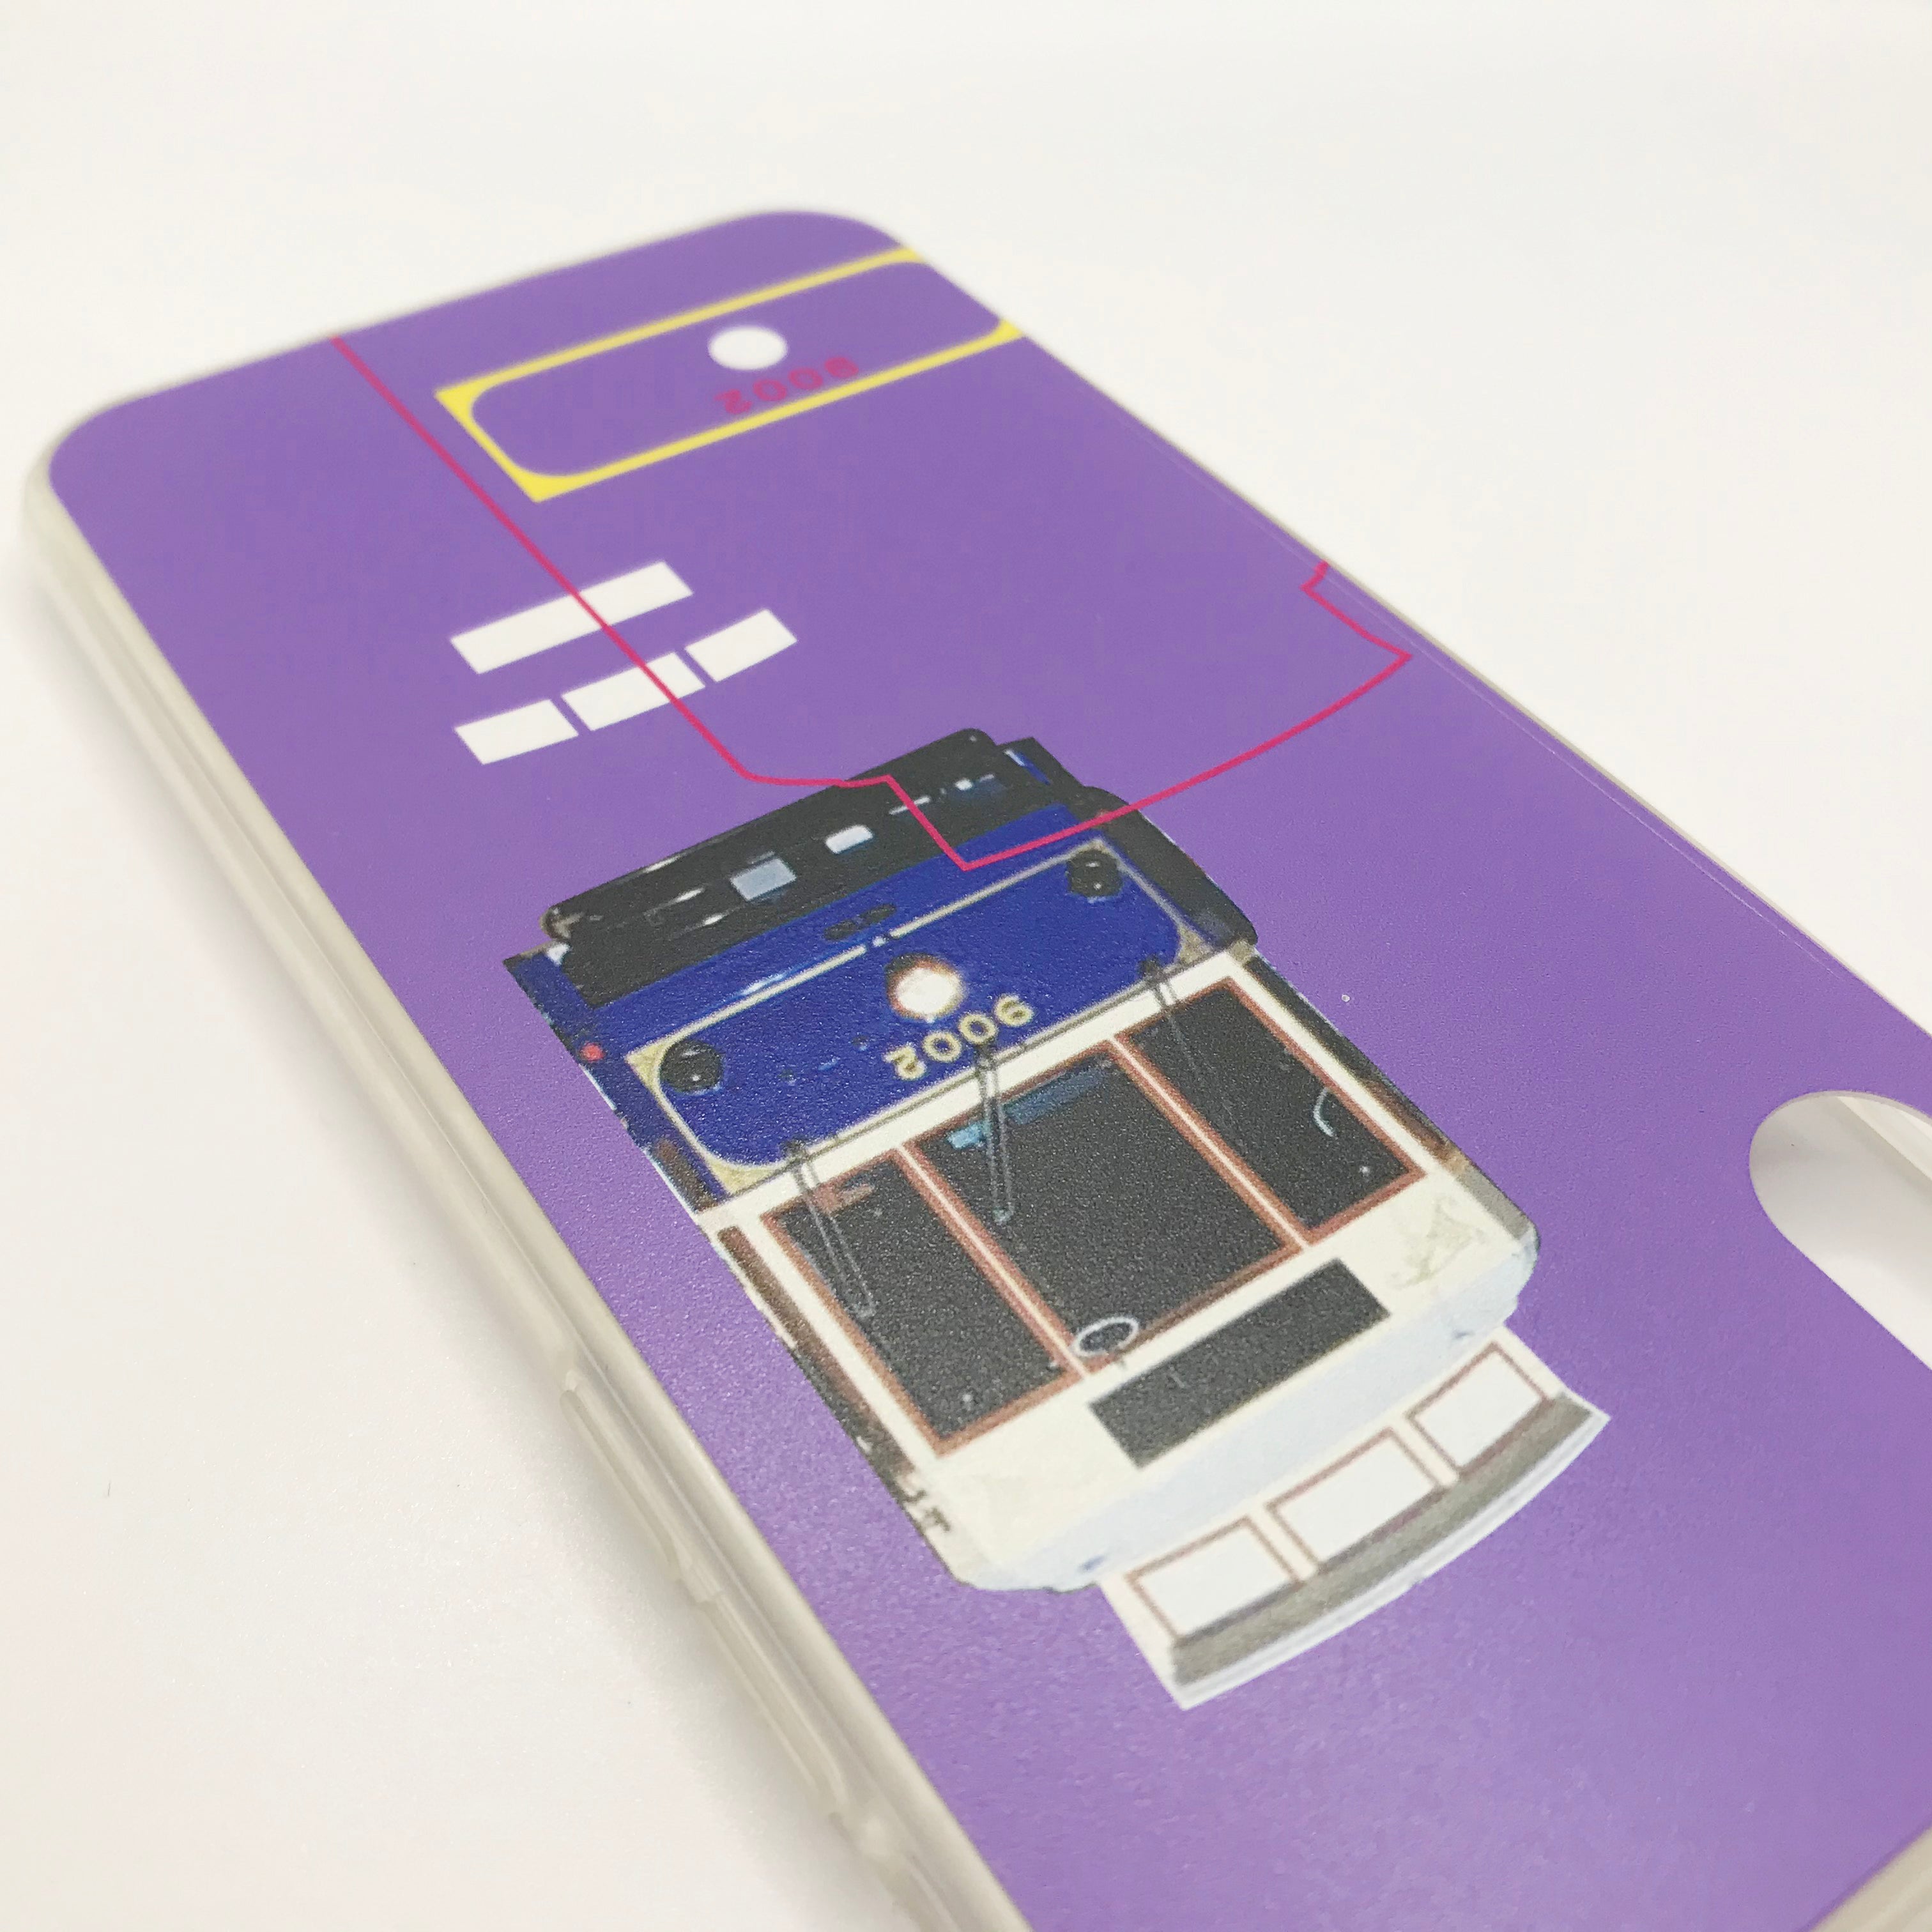 【80%OFF】Tokyo Bureau of Transportation Smartphone Case Purple